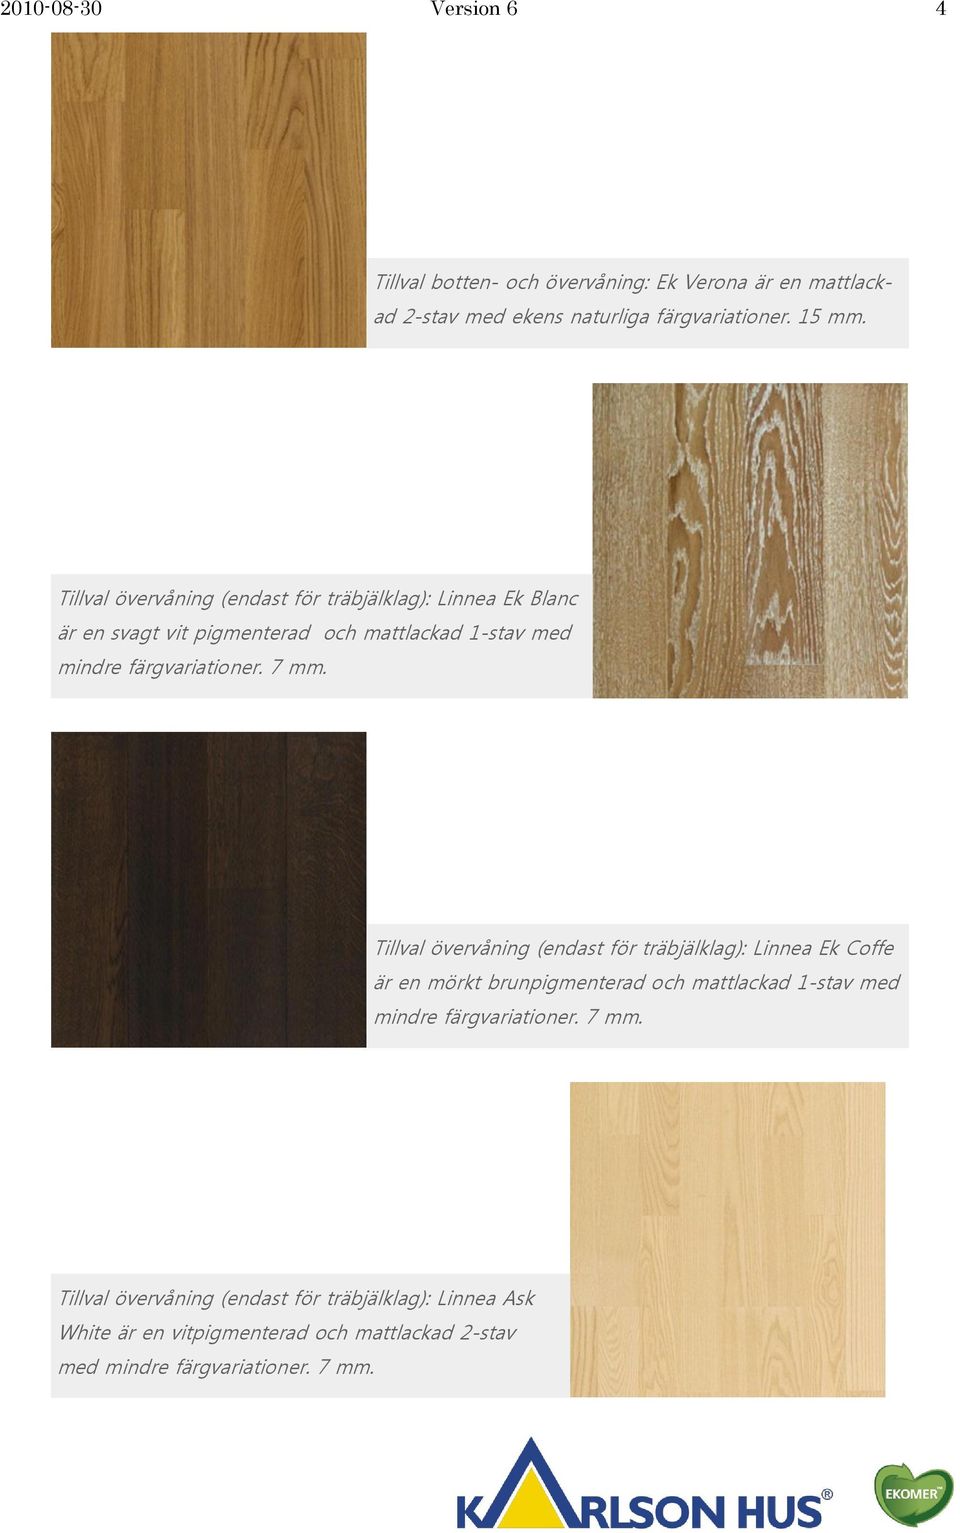 7 mm. Tillval övervåning (endast för träbjälklag): Linnea Ek Coffe är en mörkt brunpigmenterad och mattlackad 1-stav med mindre